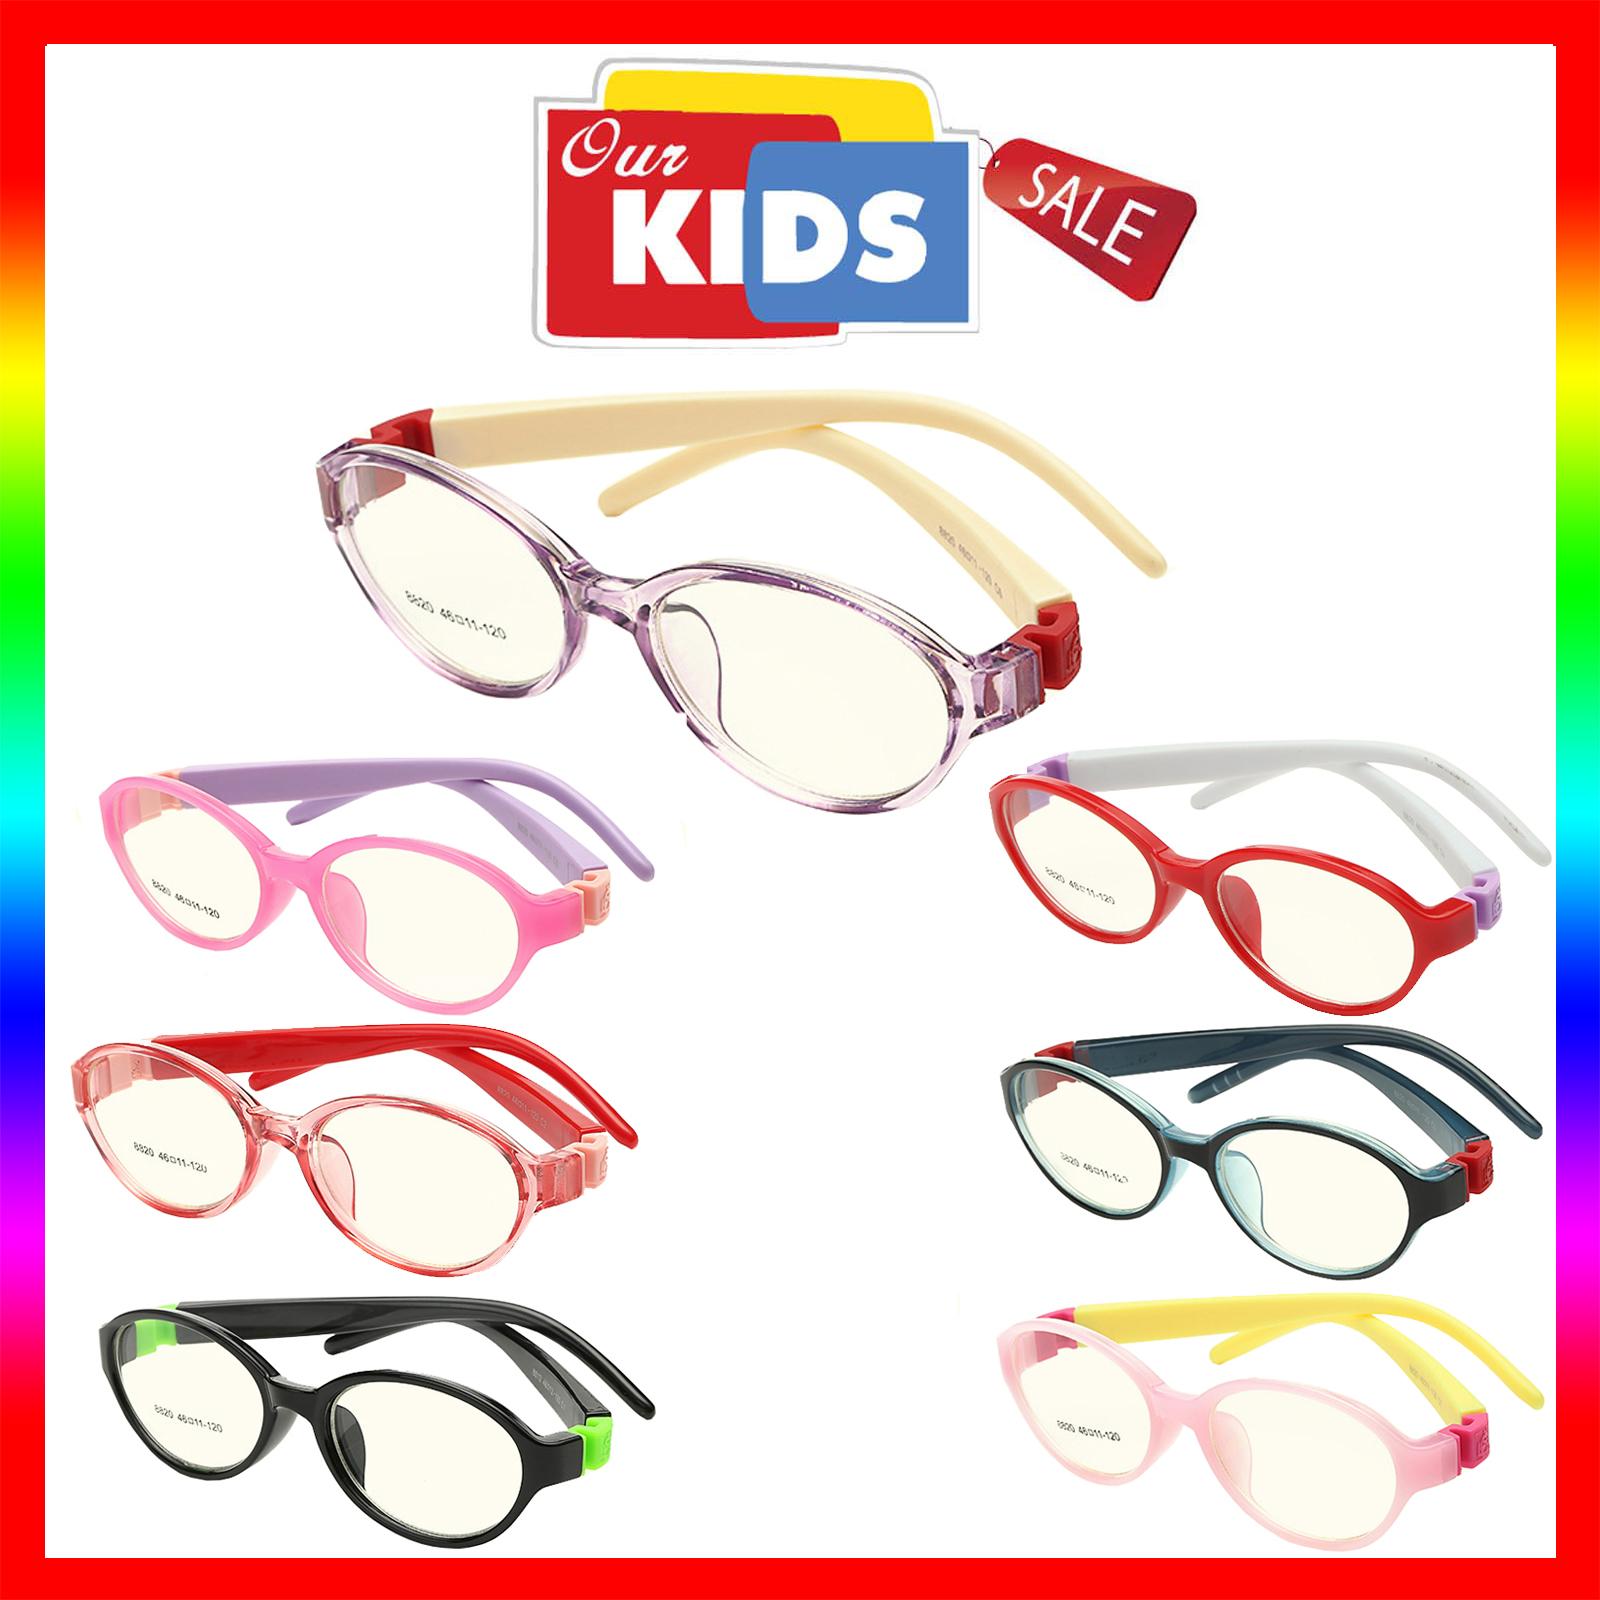 แว่นตาเกาหลีเด็ก Fashion Korea Children แว่นตาเด็ก รุ่น 8820 กรอบแว่นตาเด็ก Oval รูปไข่แนวนอน Eyeglass baby frame ( สำหรับตัดเลนส์ ) วัสดุ PC เบา ขาข้อต่อ Kid leg joints Plastic Grade A material Eyewear Top Glasses